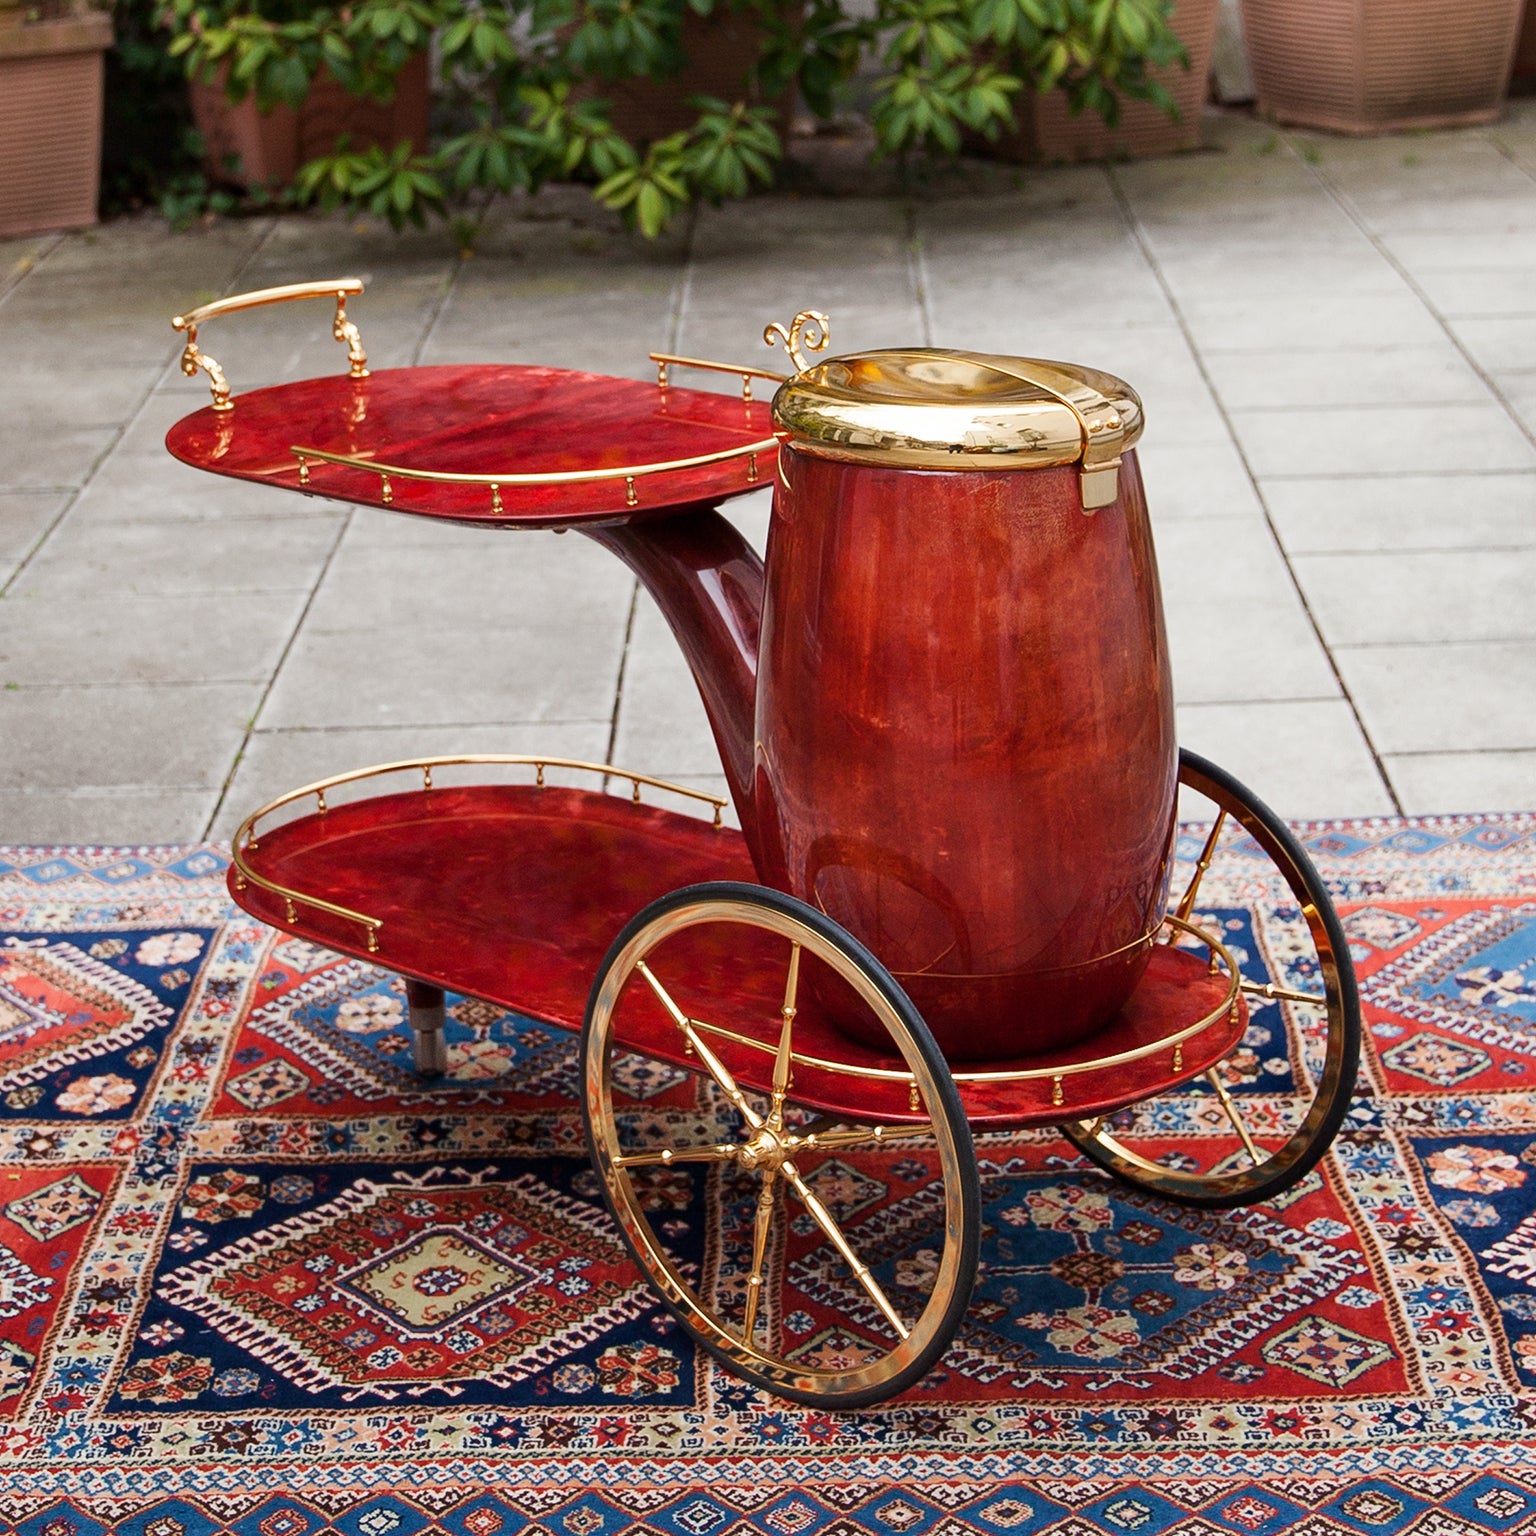 Aldo Tura Barwagen in Form einer Pfeife, lackiert in rotem Ziegenleder mit goldenen Messingapplikationen und einem großen Behälter als Sekt- oder Weinkühler.
In Anlehnung an die Idee von Rene Magritte. 
Einer der bekanntesten Entwürfe von Aldo Tura.